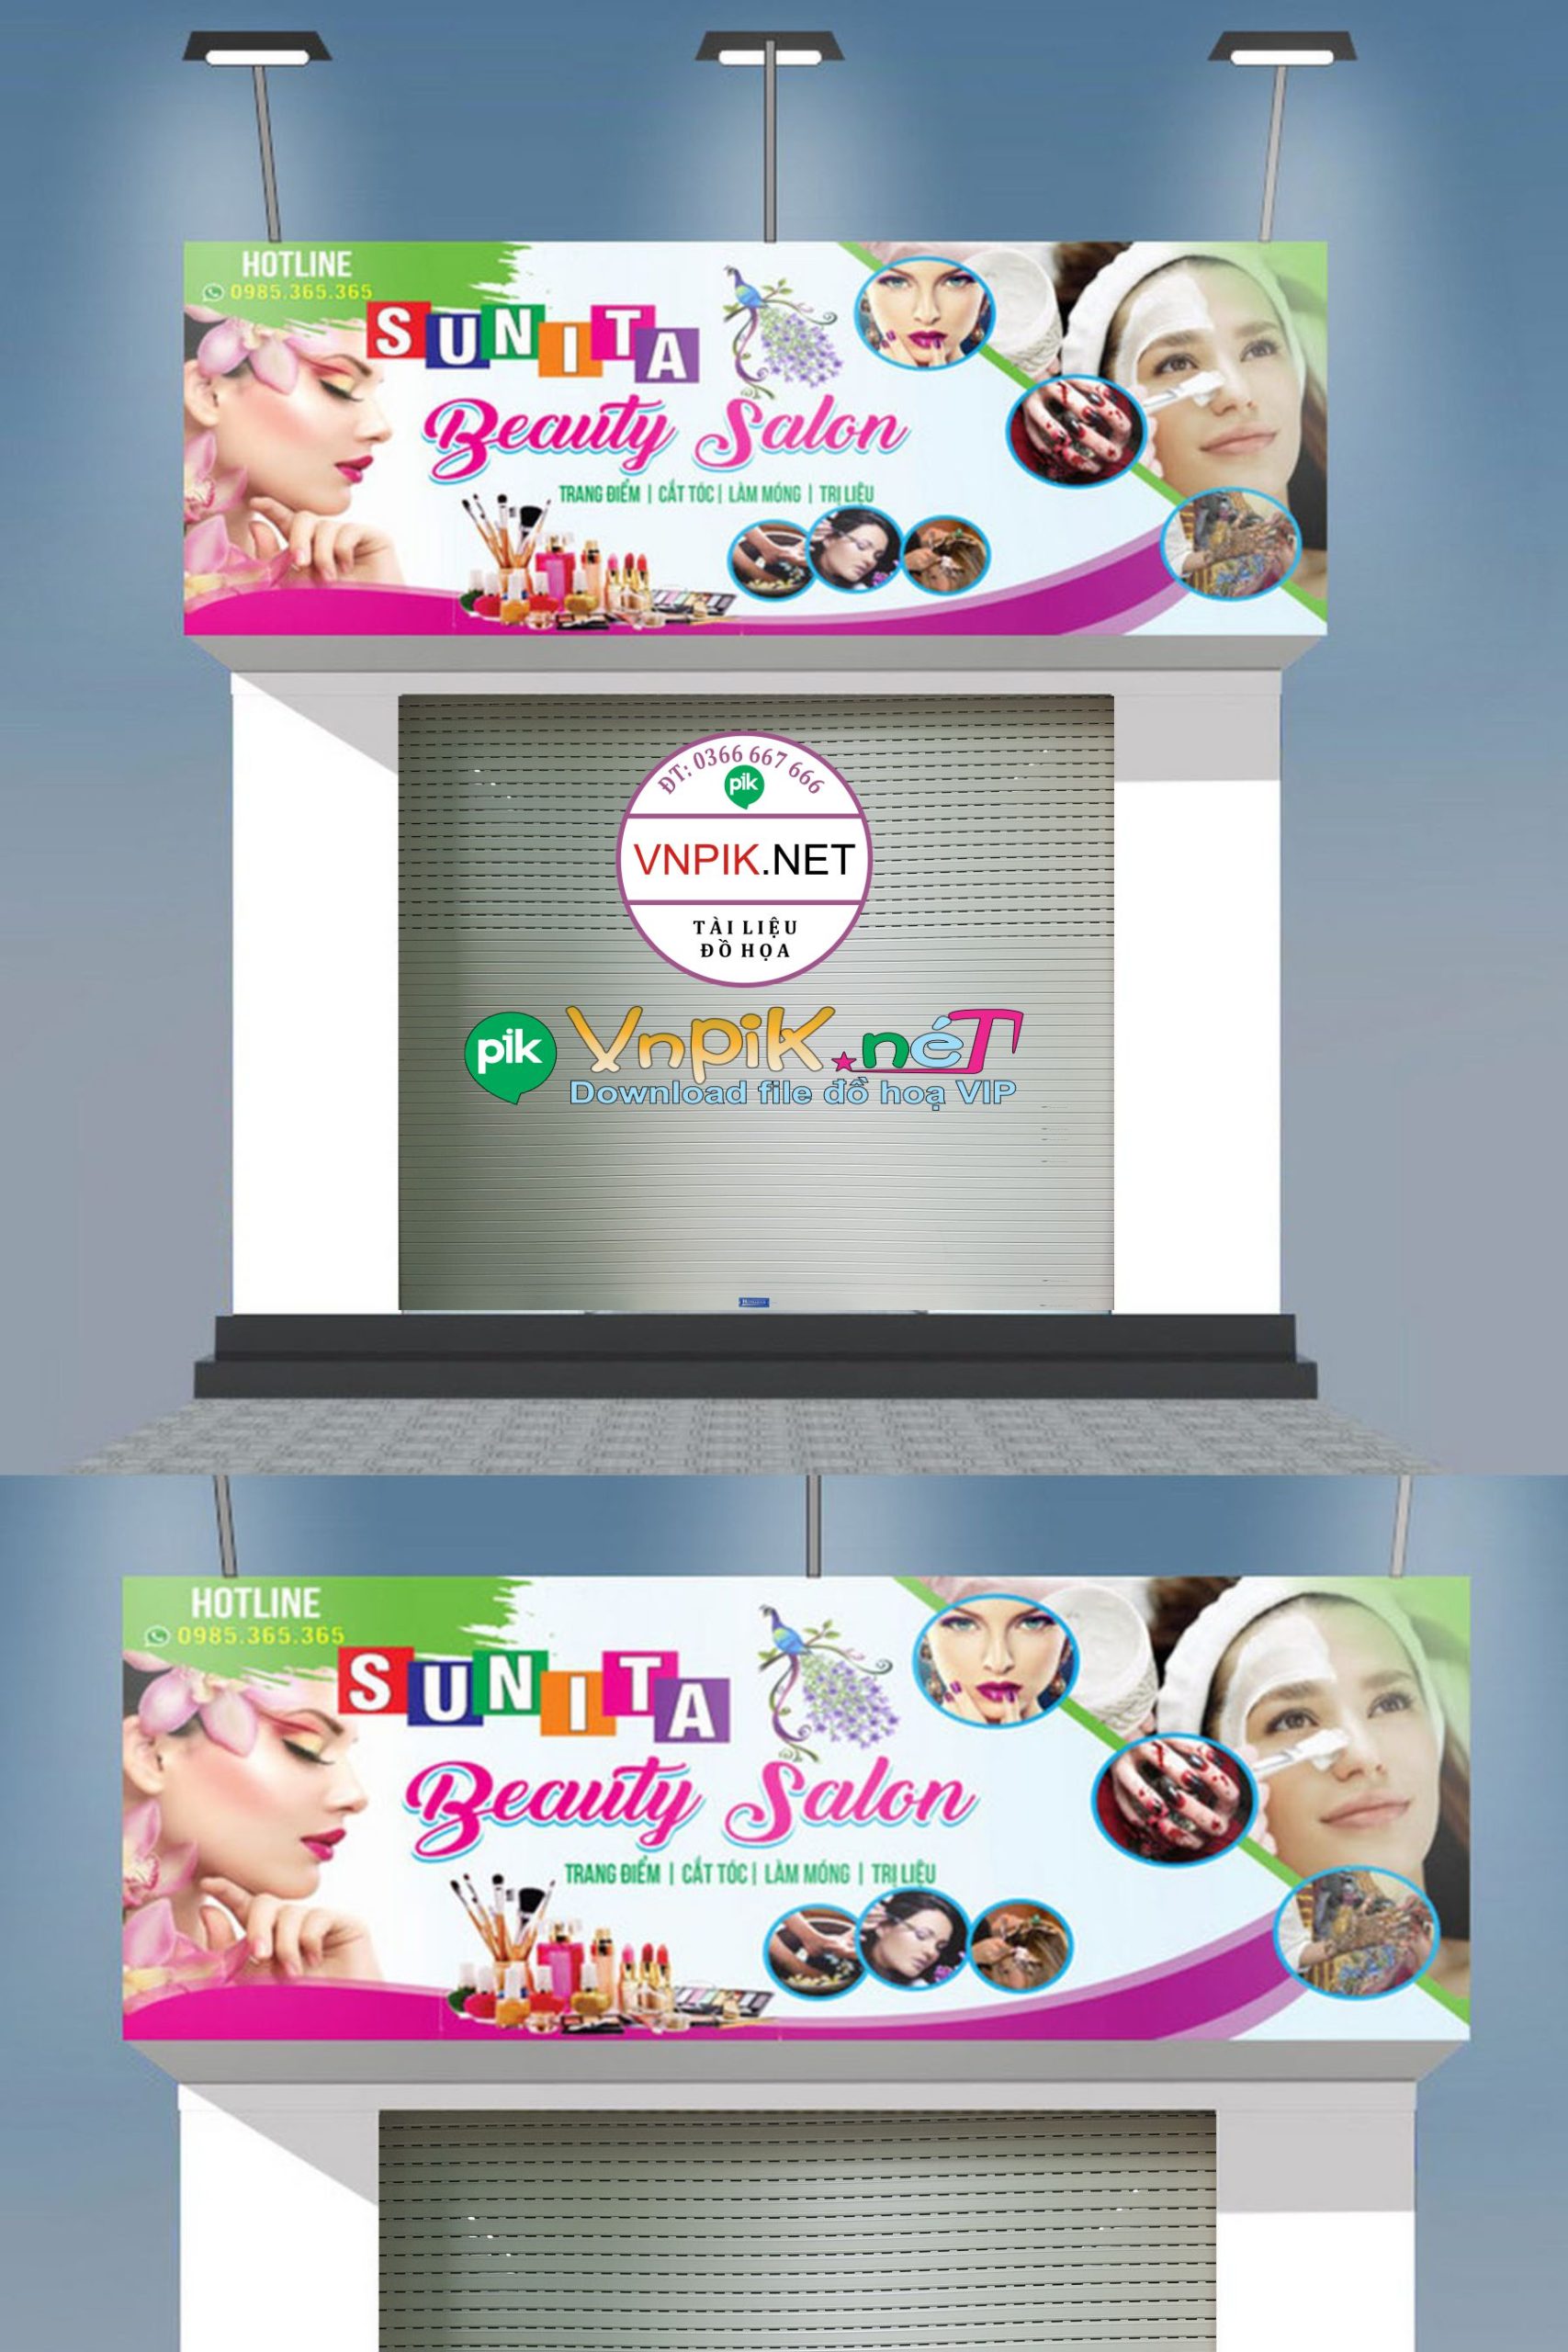 Mẫu biển quảng cáo tiệm beauty salon